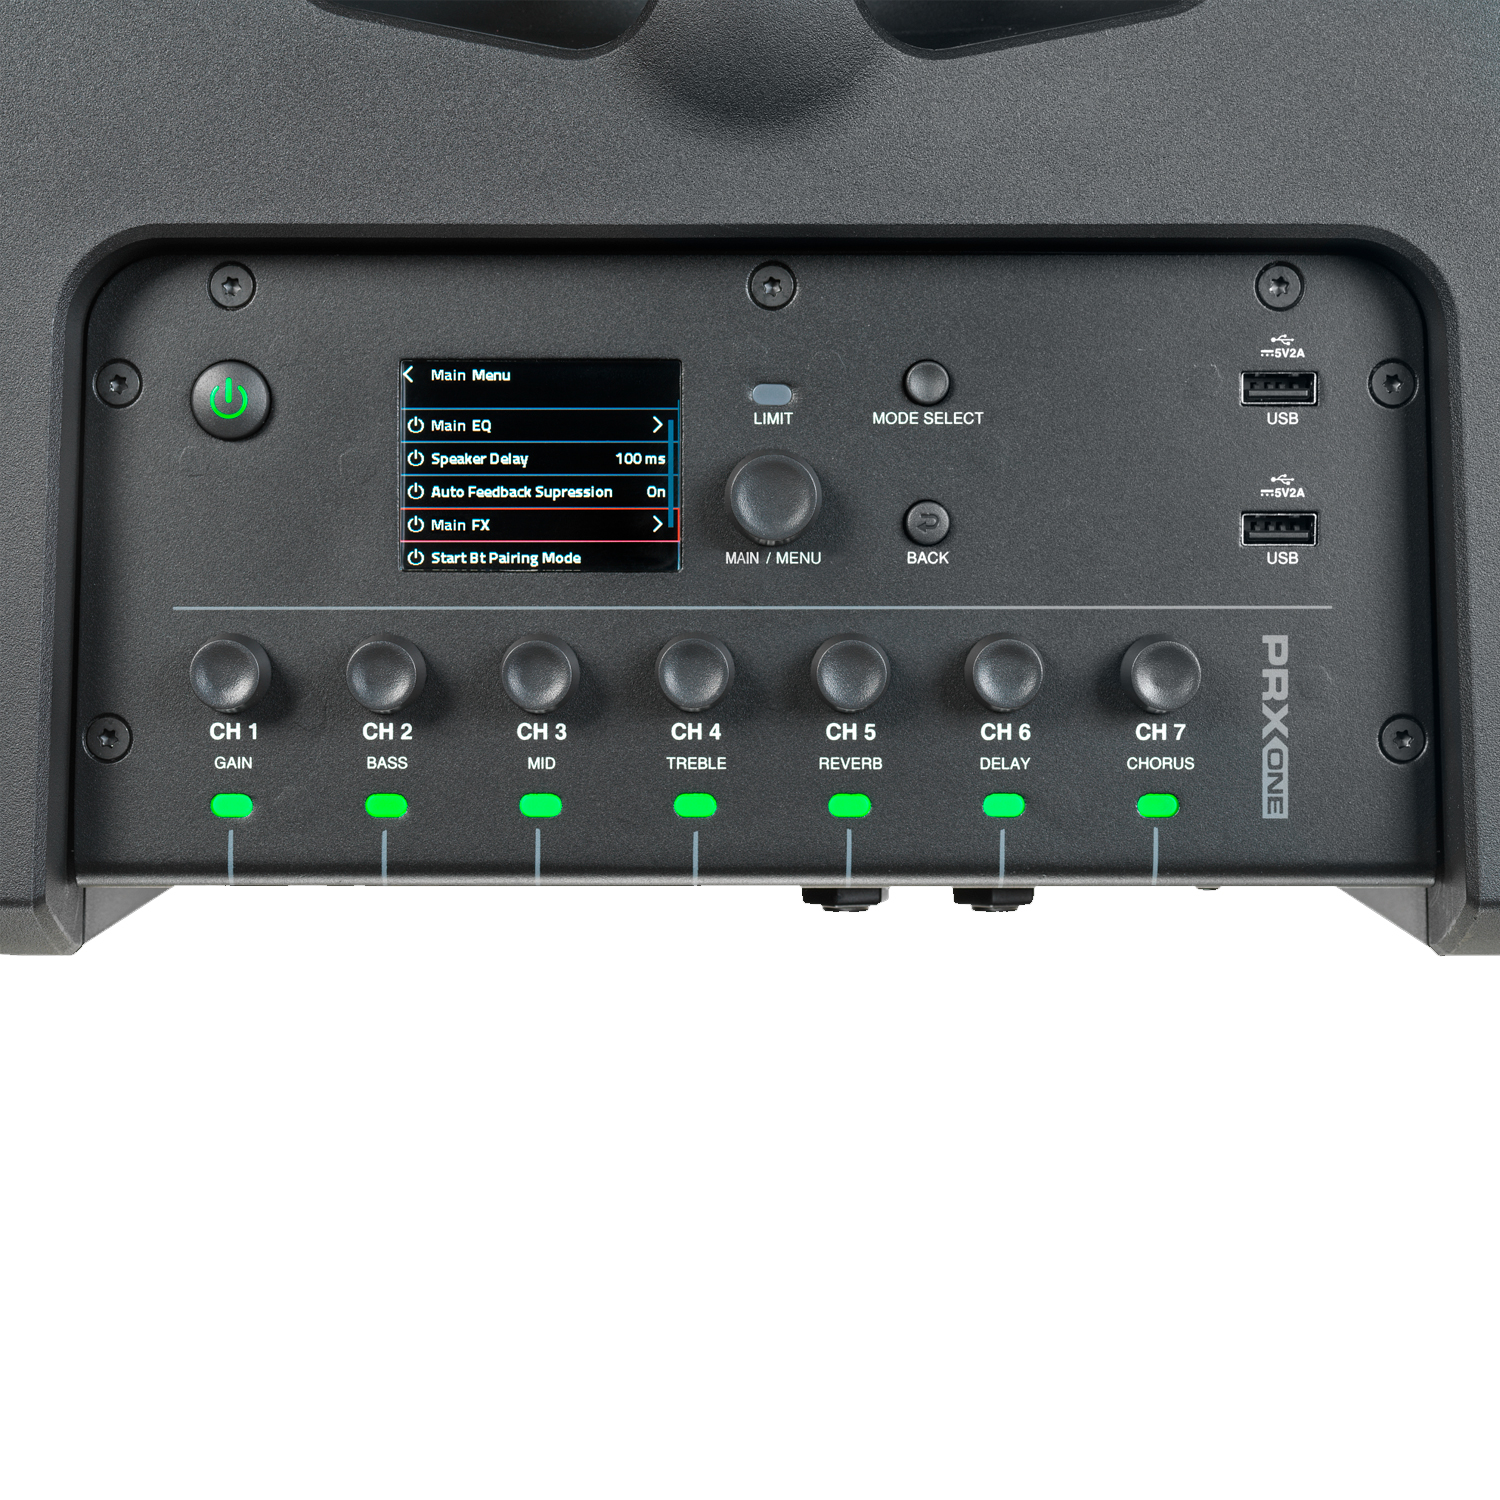 JBL PRX One двухполосная активная акустическая система - колонна, 2000Вт, 7 кан. микшер, Bluetooth